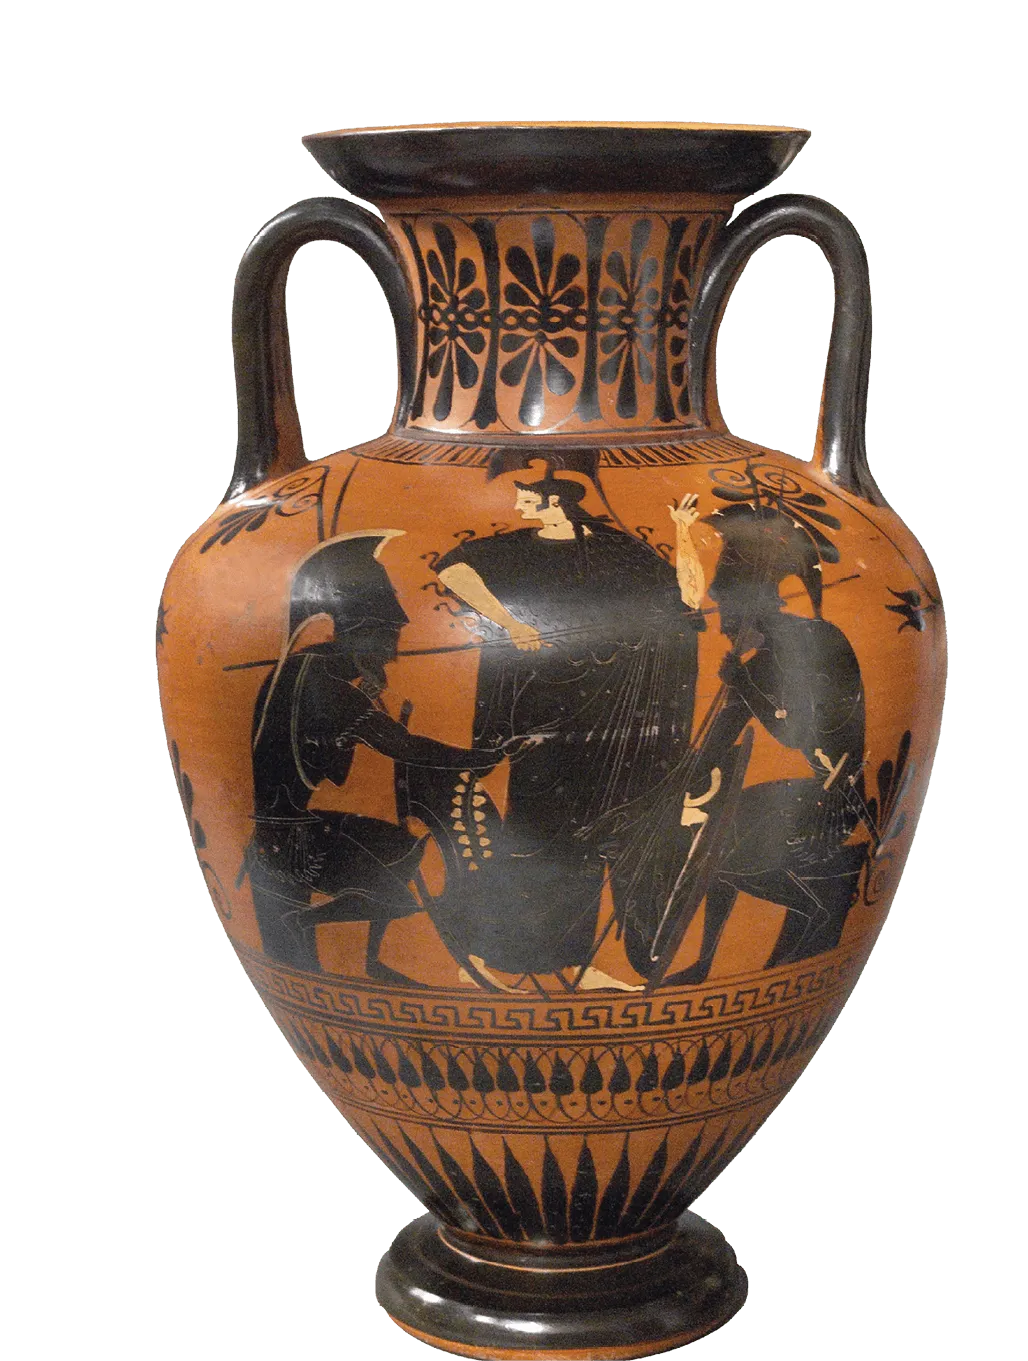 Guerriers grecs jouant
aux dés